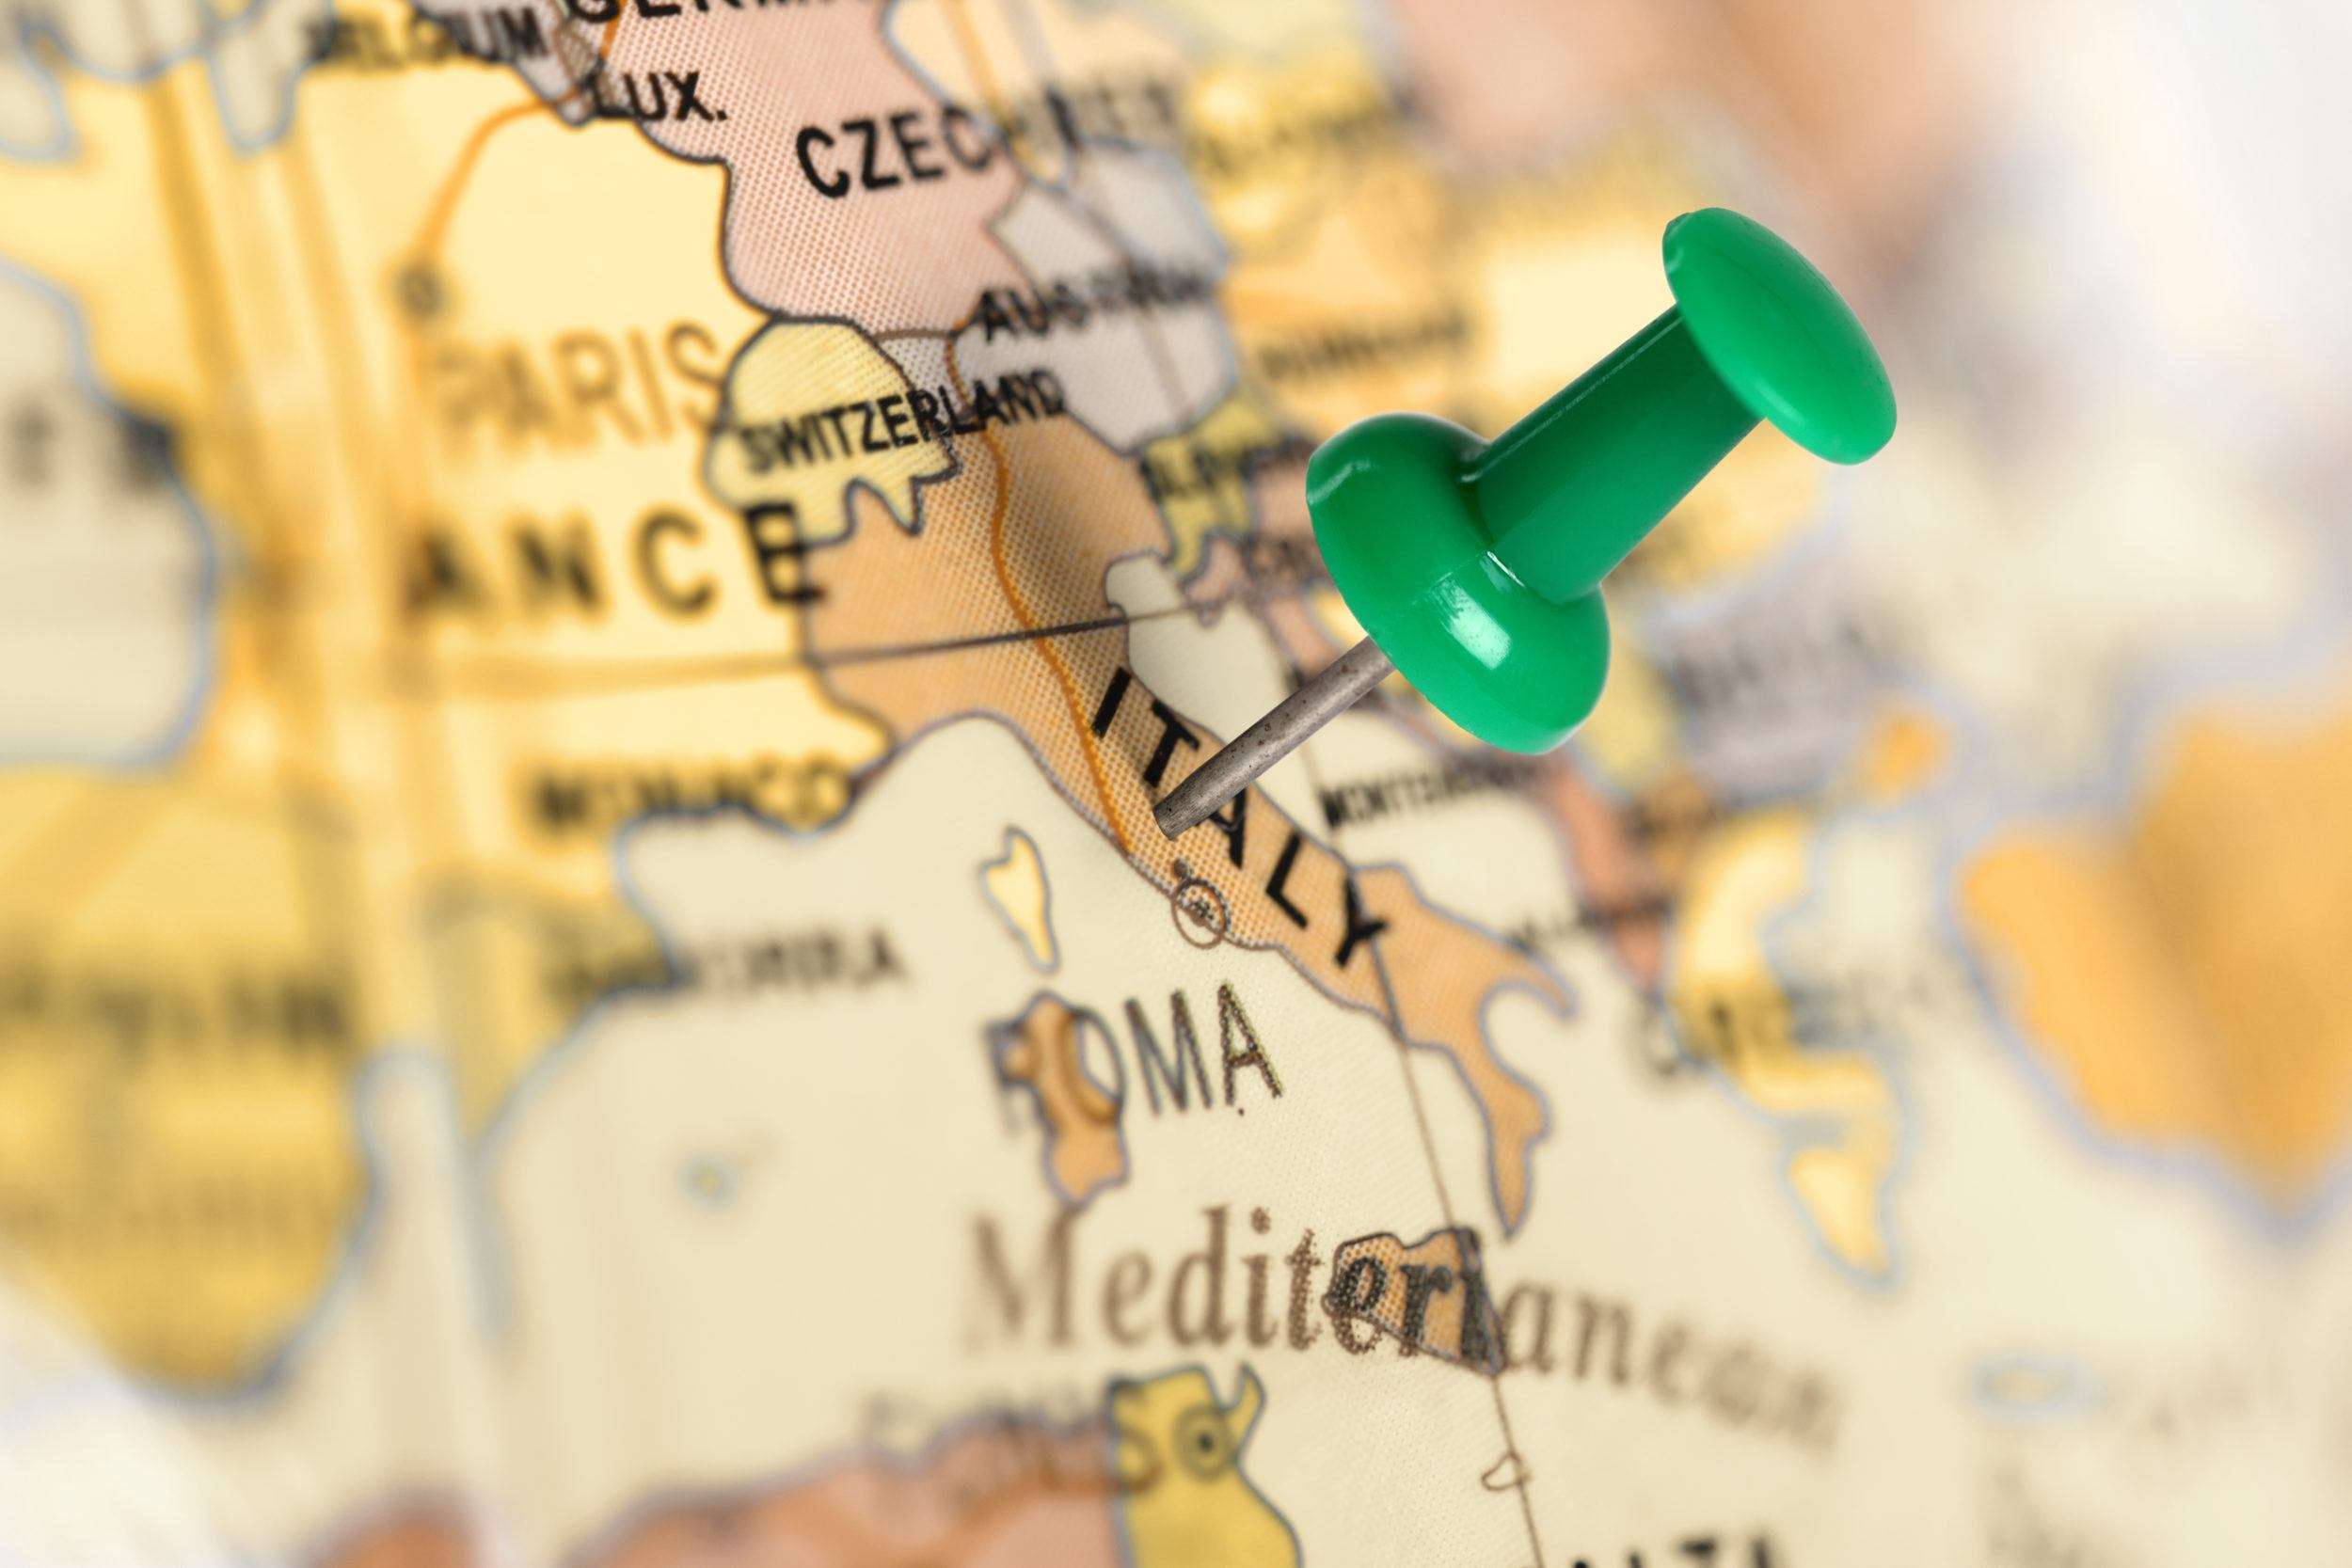 Ιταλία: Απίστευτη σκληρότητα έναντι πρώην δημάρχου λόγω της φιλομεταναστευτικής του πολιτικής